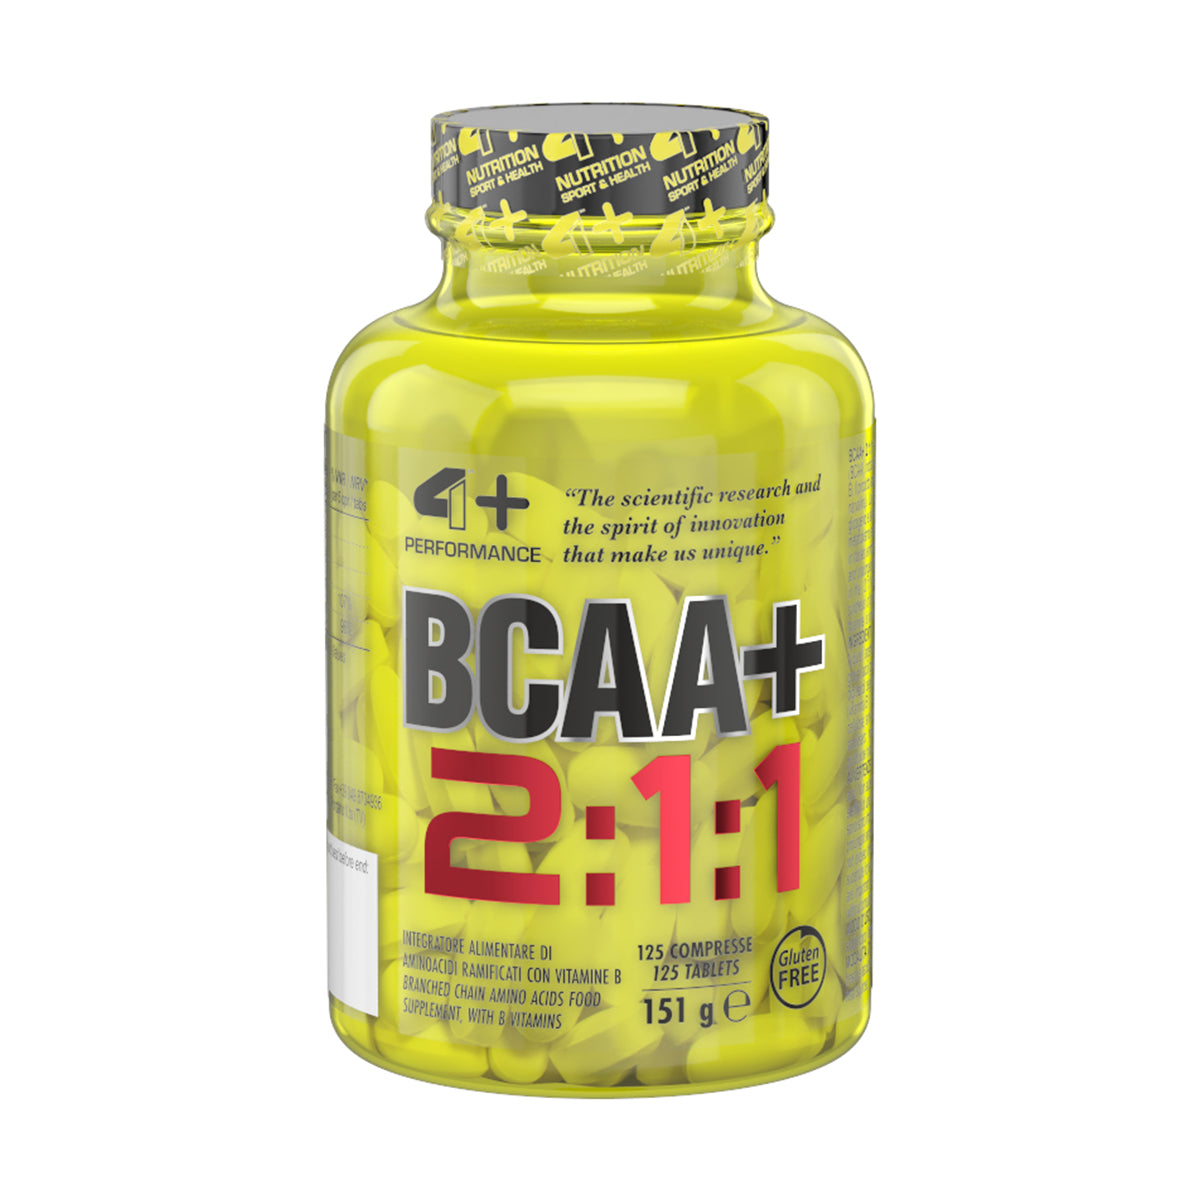 4+ Nutrition BCAA+ 2:1:1